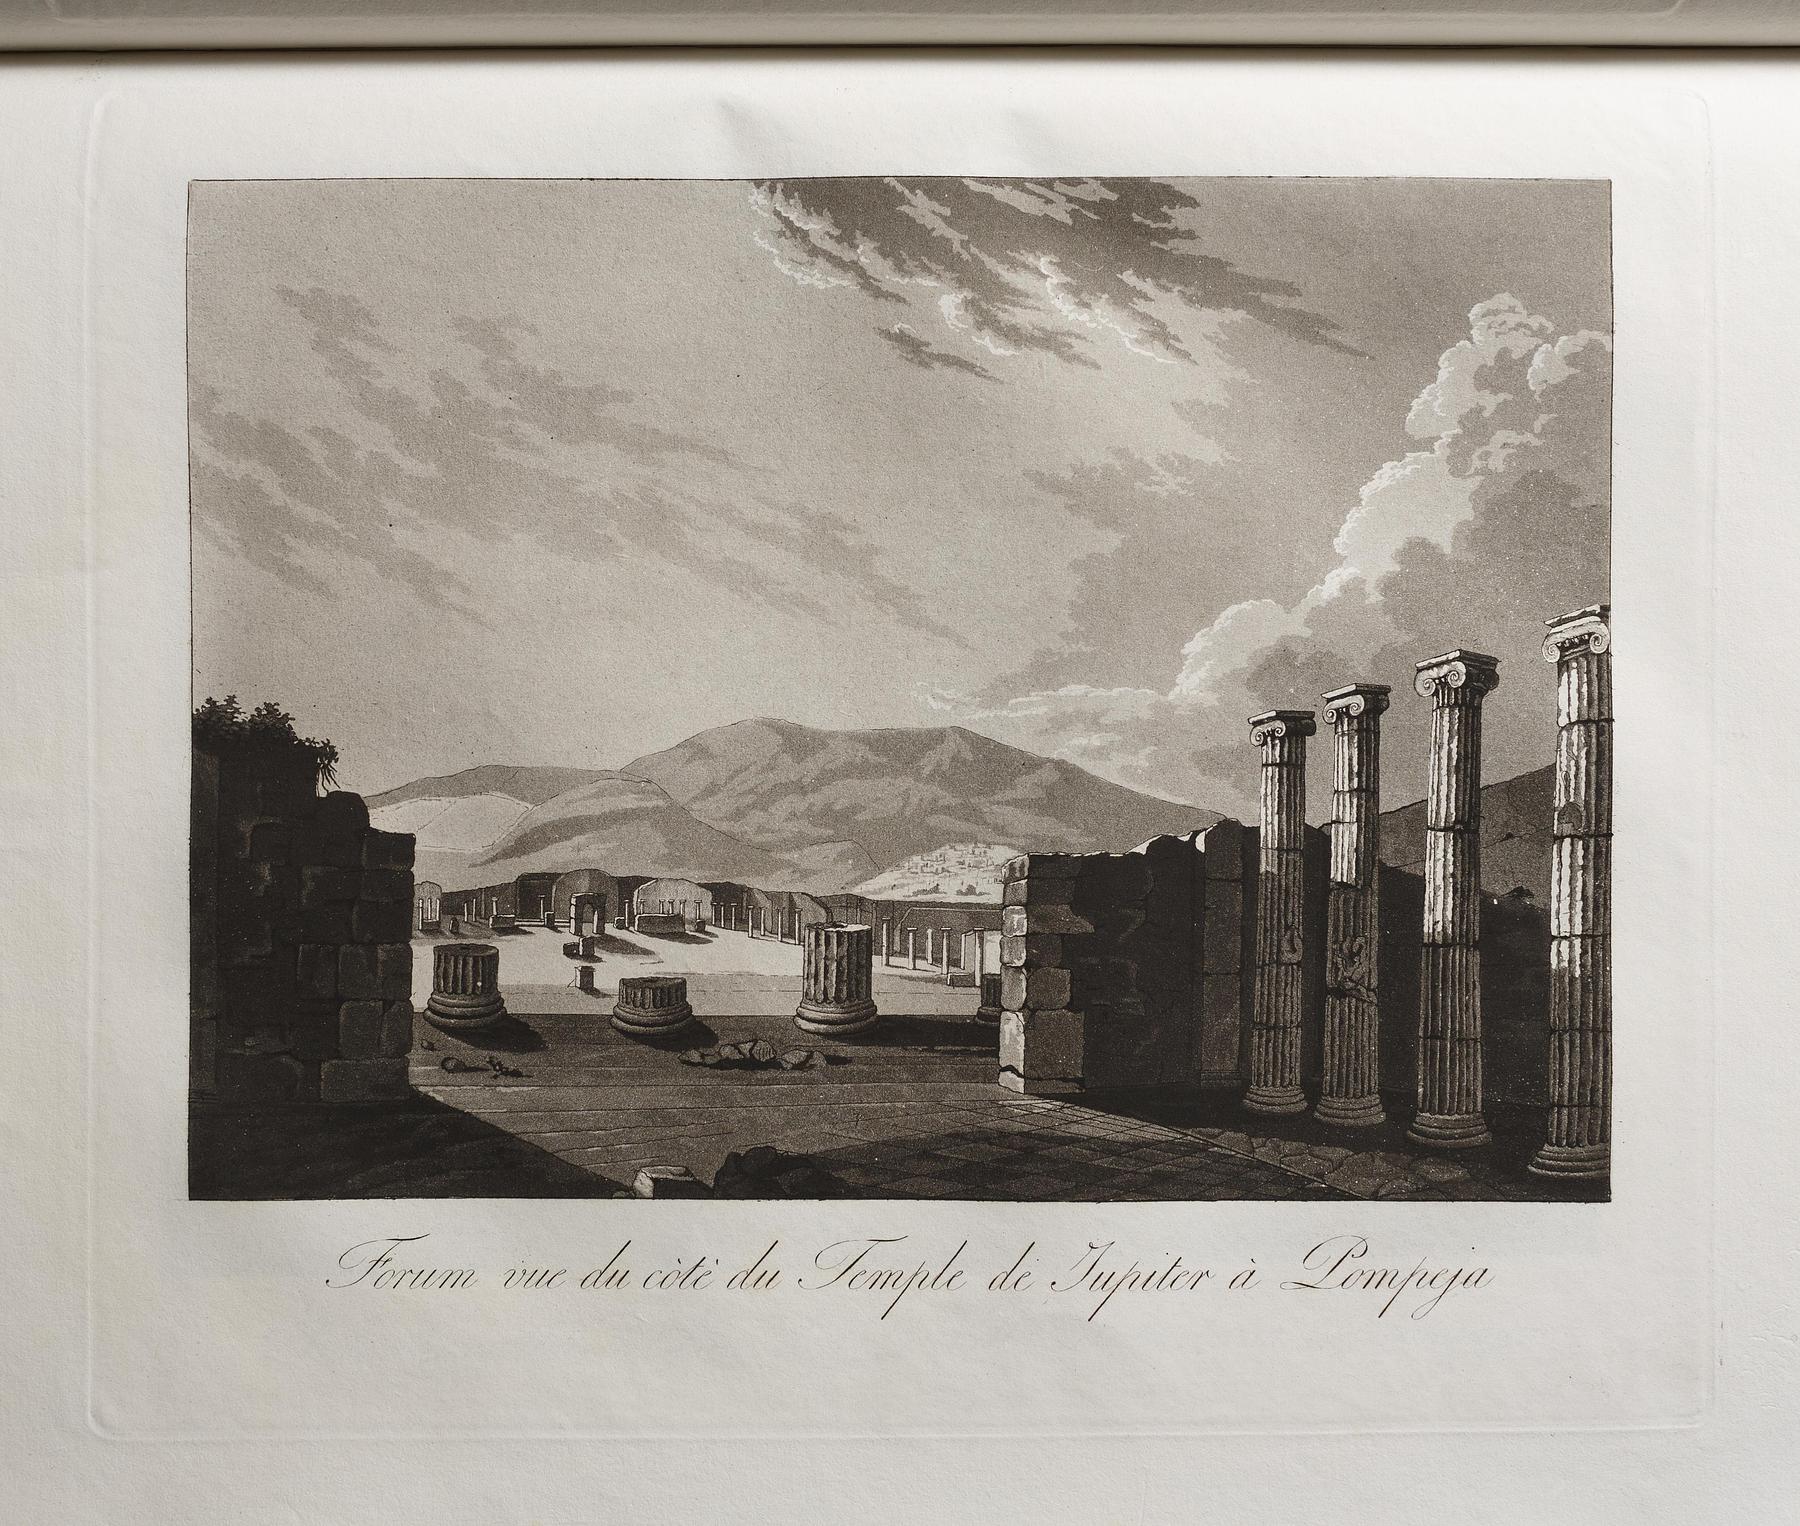 Forum vue du còté du Temple de Jupiter à Pompeja, E550,29